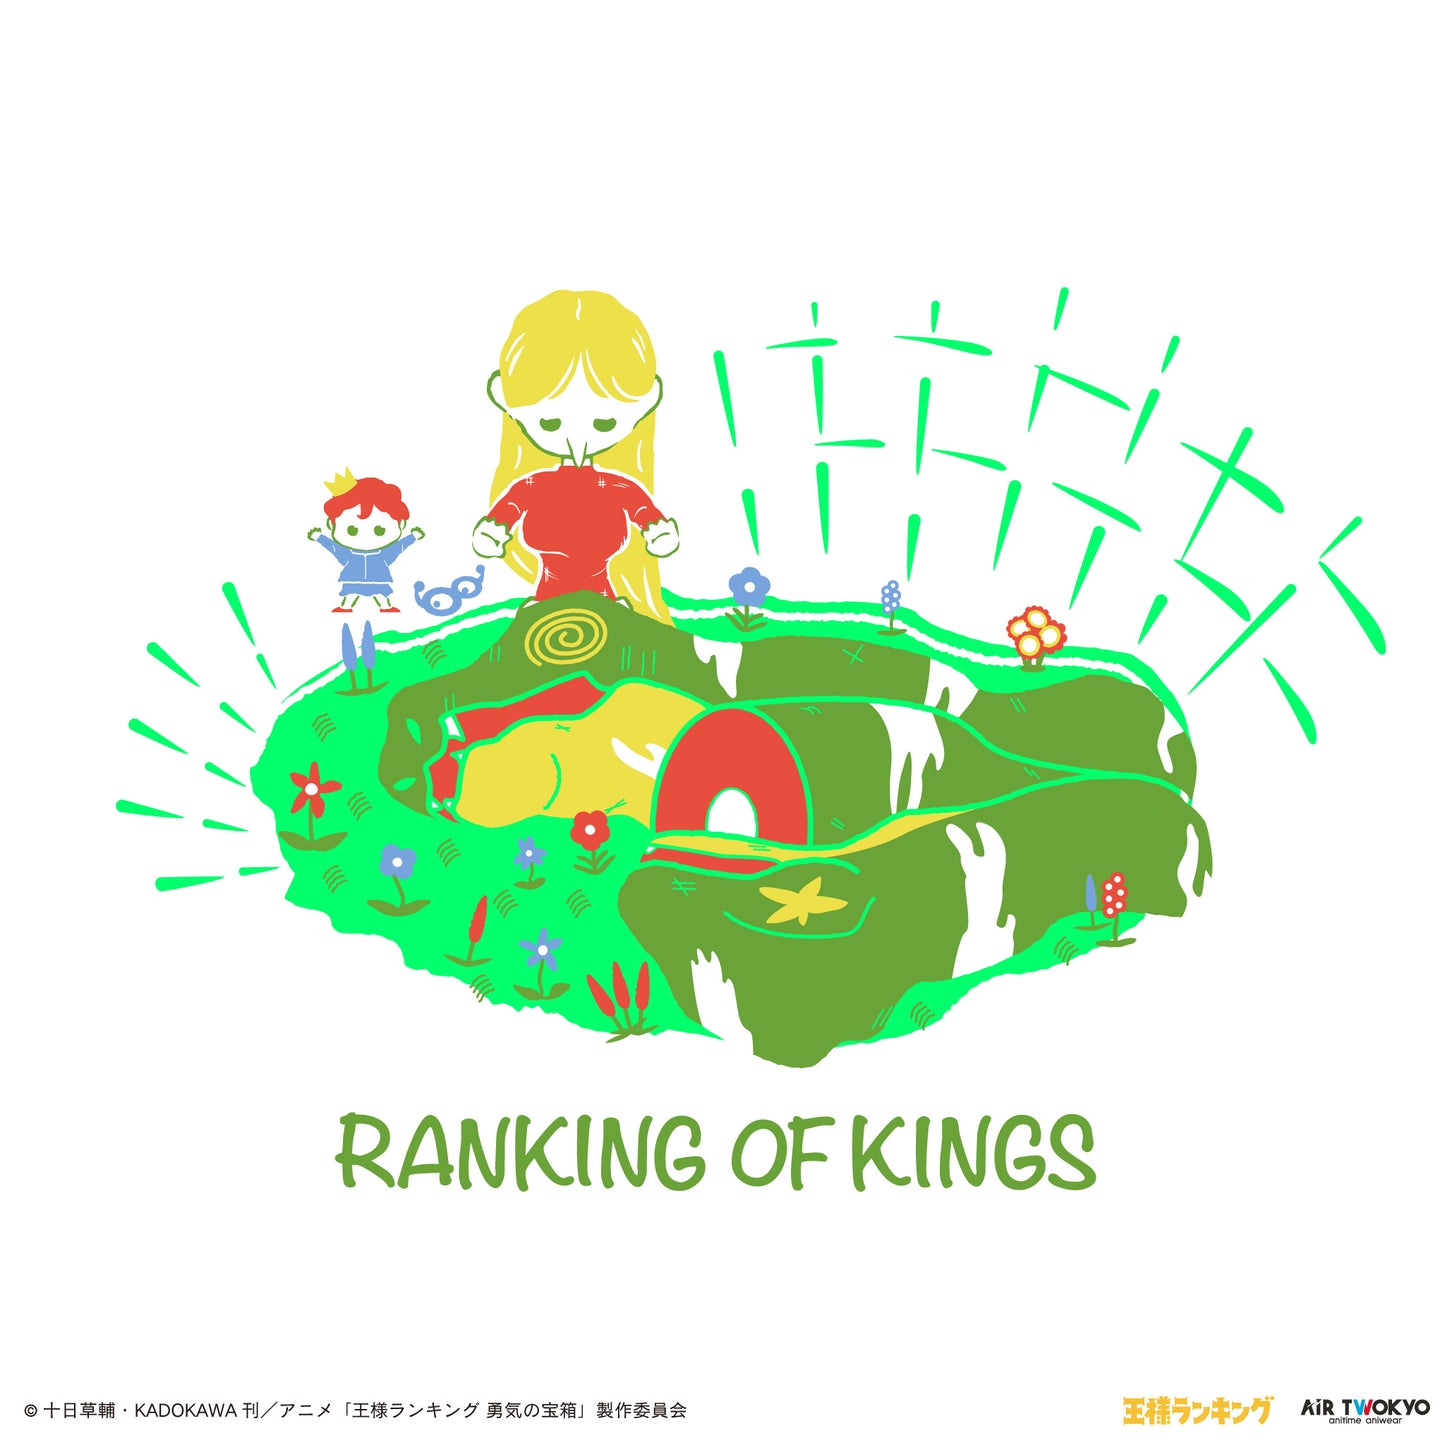 电视动画《国王排名》 场景插画T恤衫5